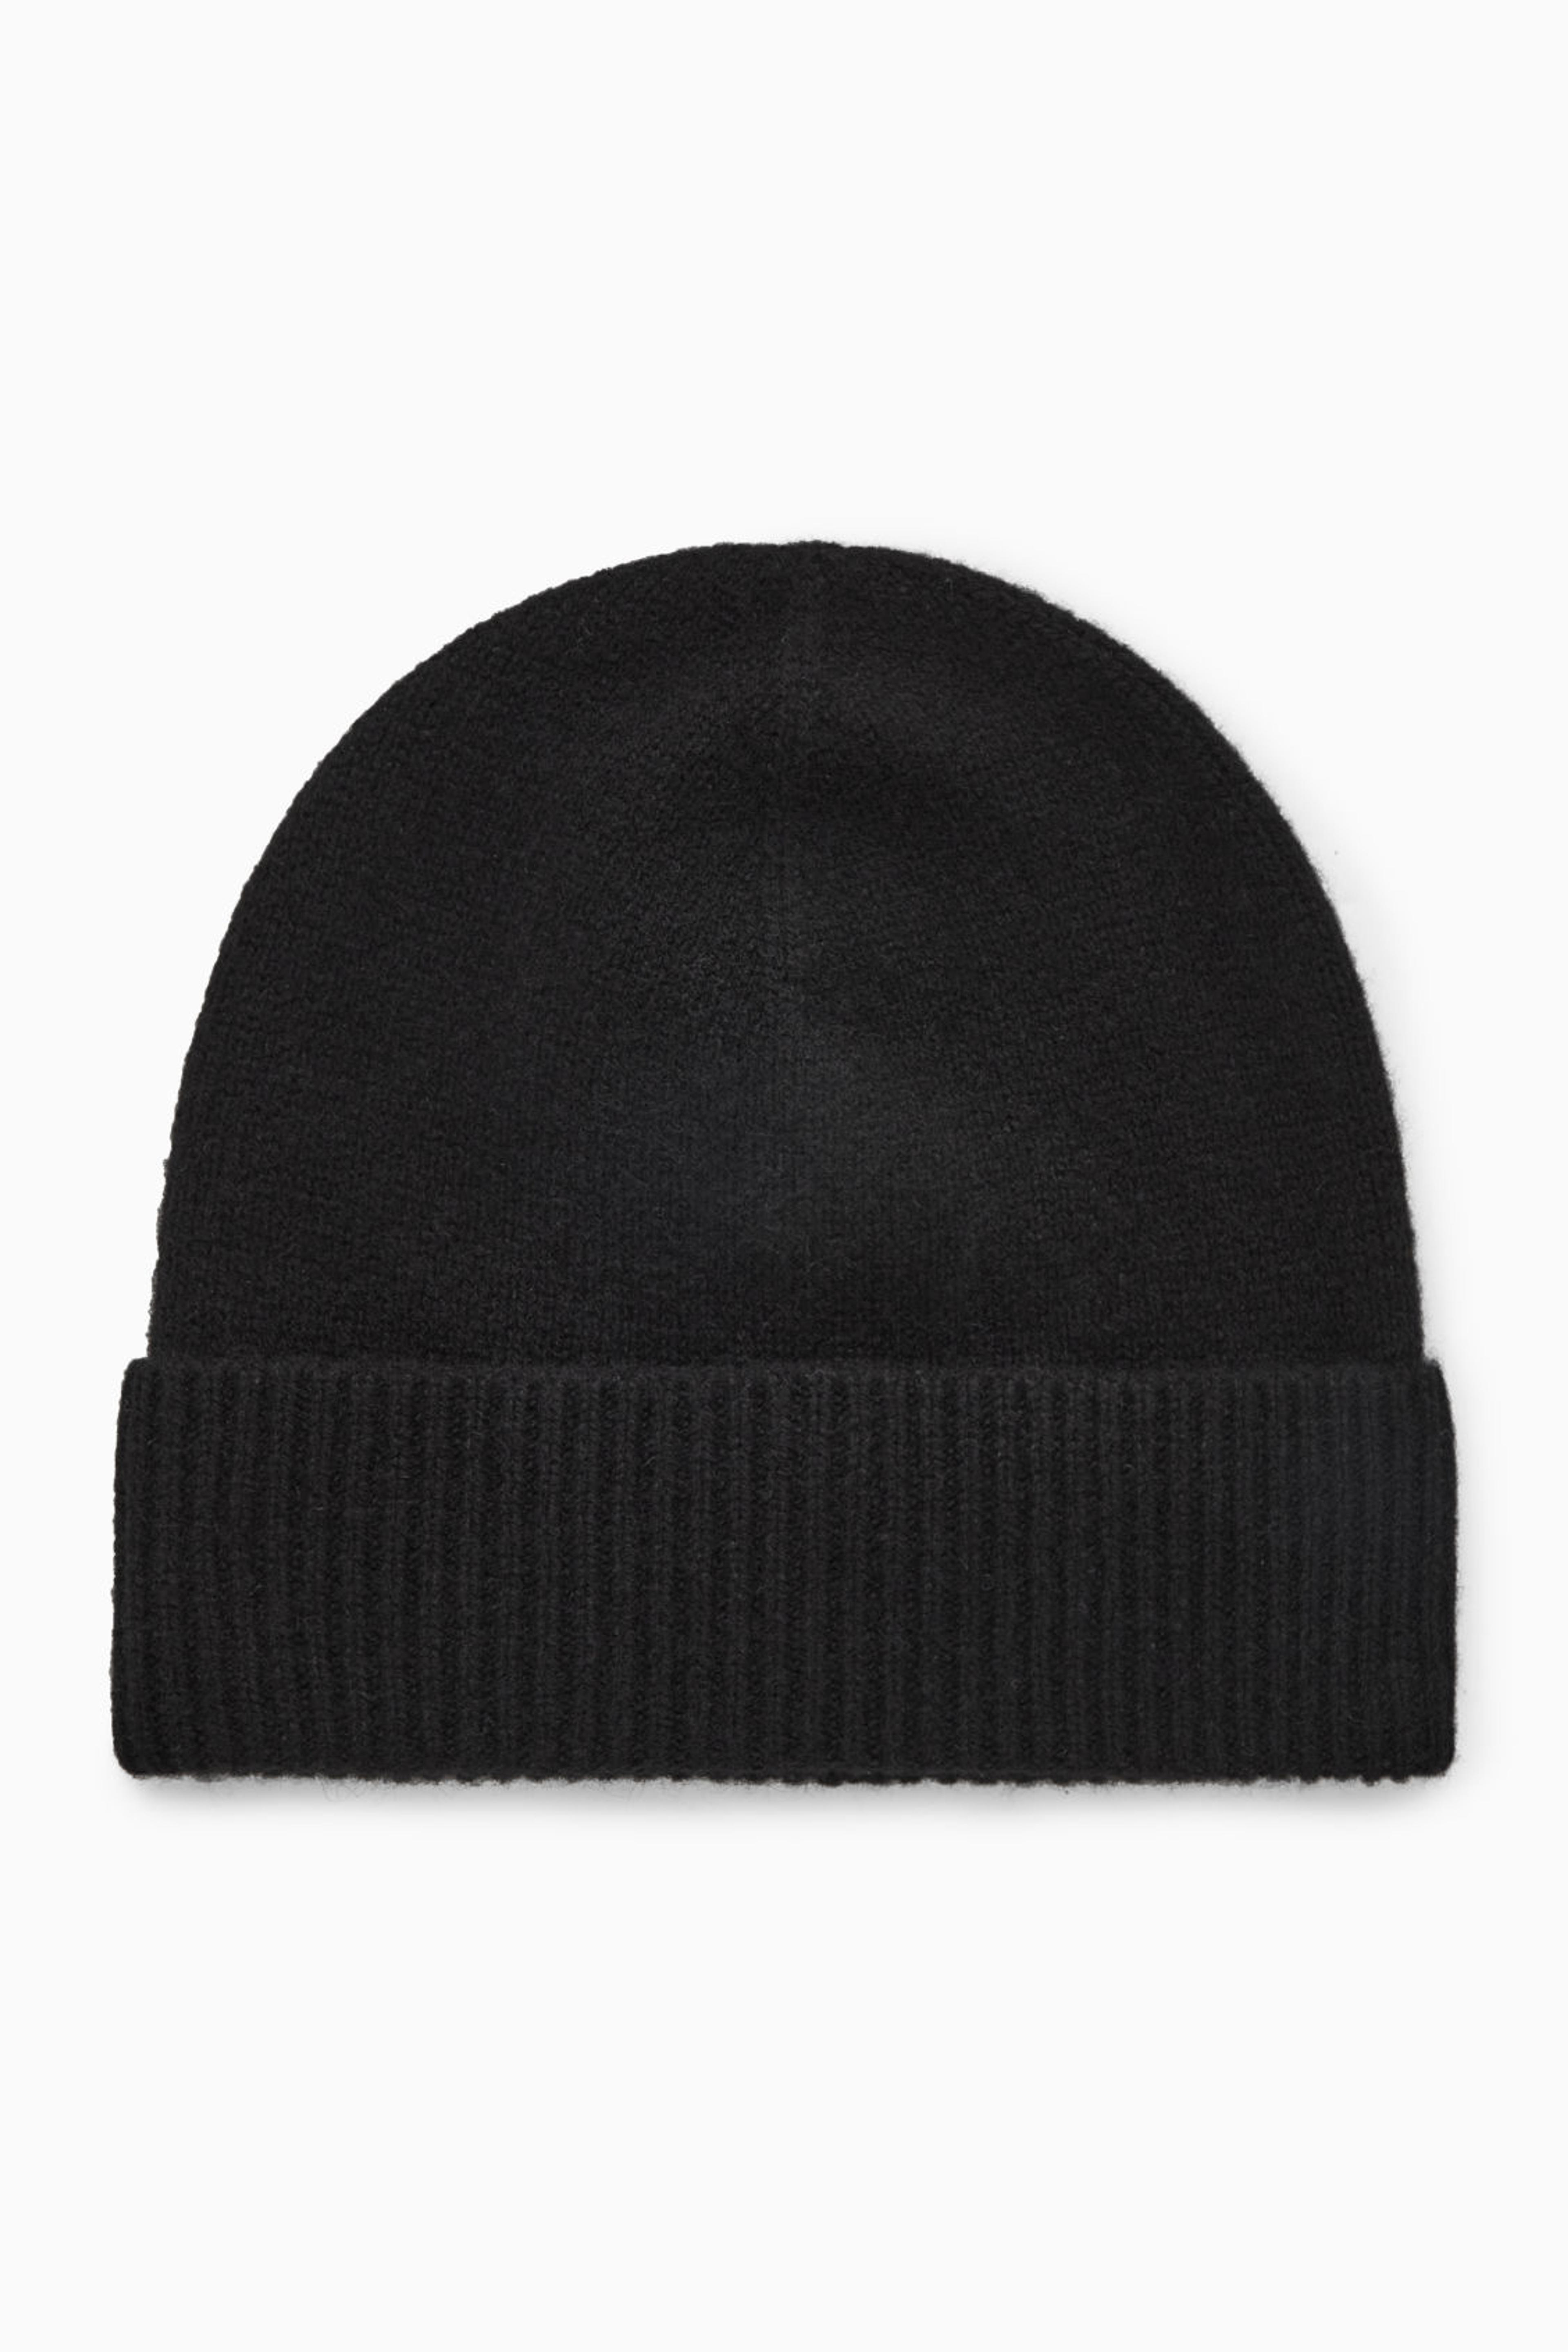 CASHMERE BEANIE - BLACK - Hats - COS US